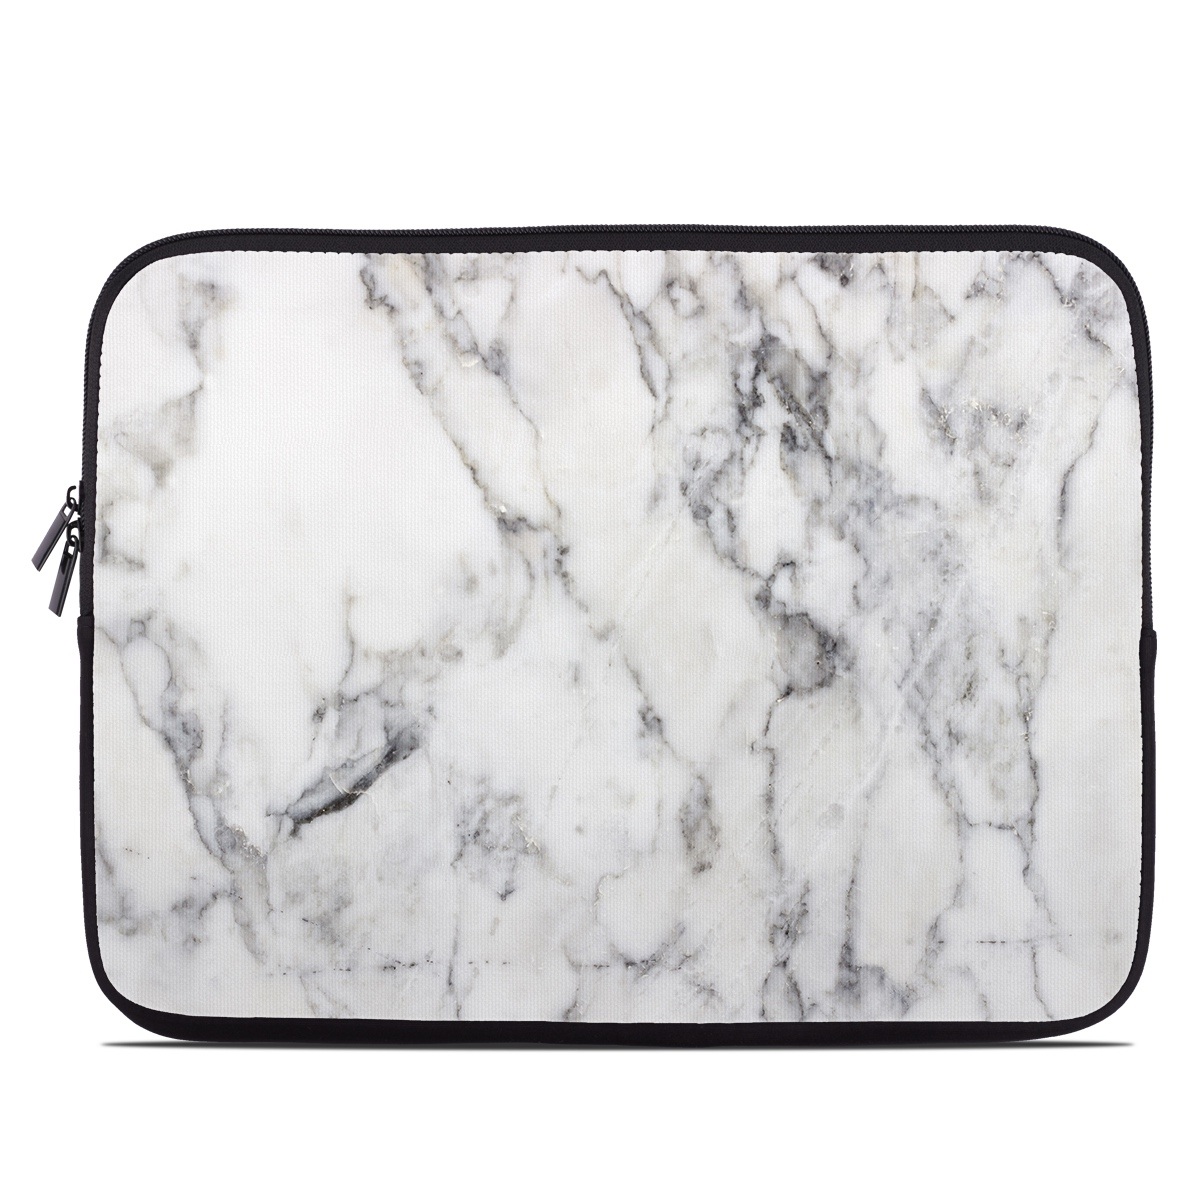 Laptop Sleeve - White Marble (Image 1)